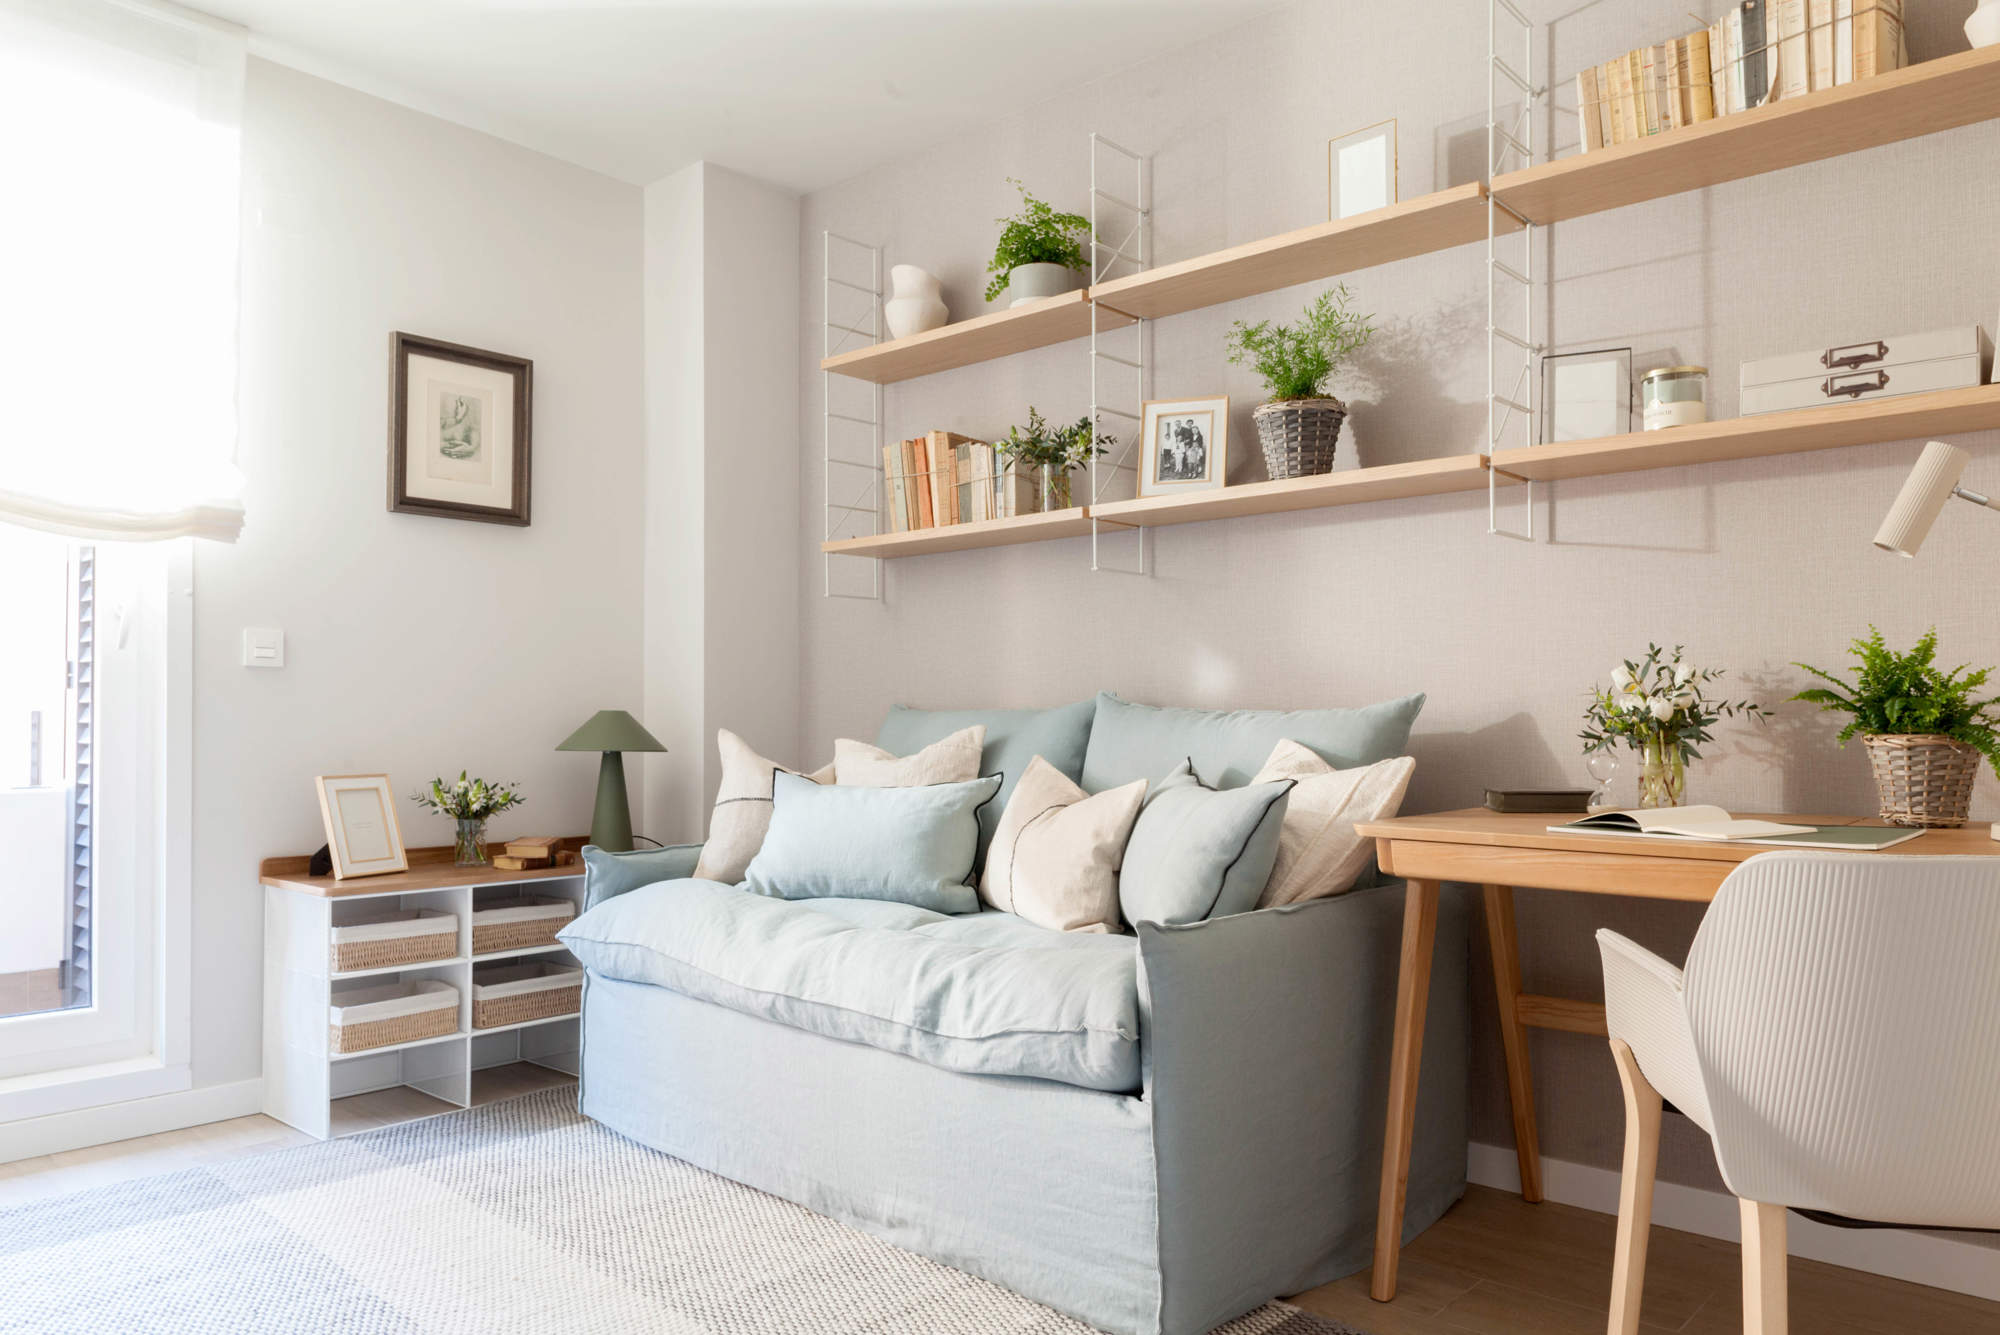 Estancia decorada con un sofá-cama en tonos azules, y mobiliario minimalista con acabados de madera.